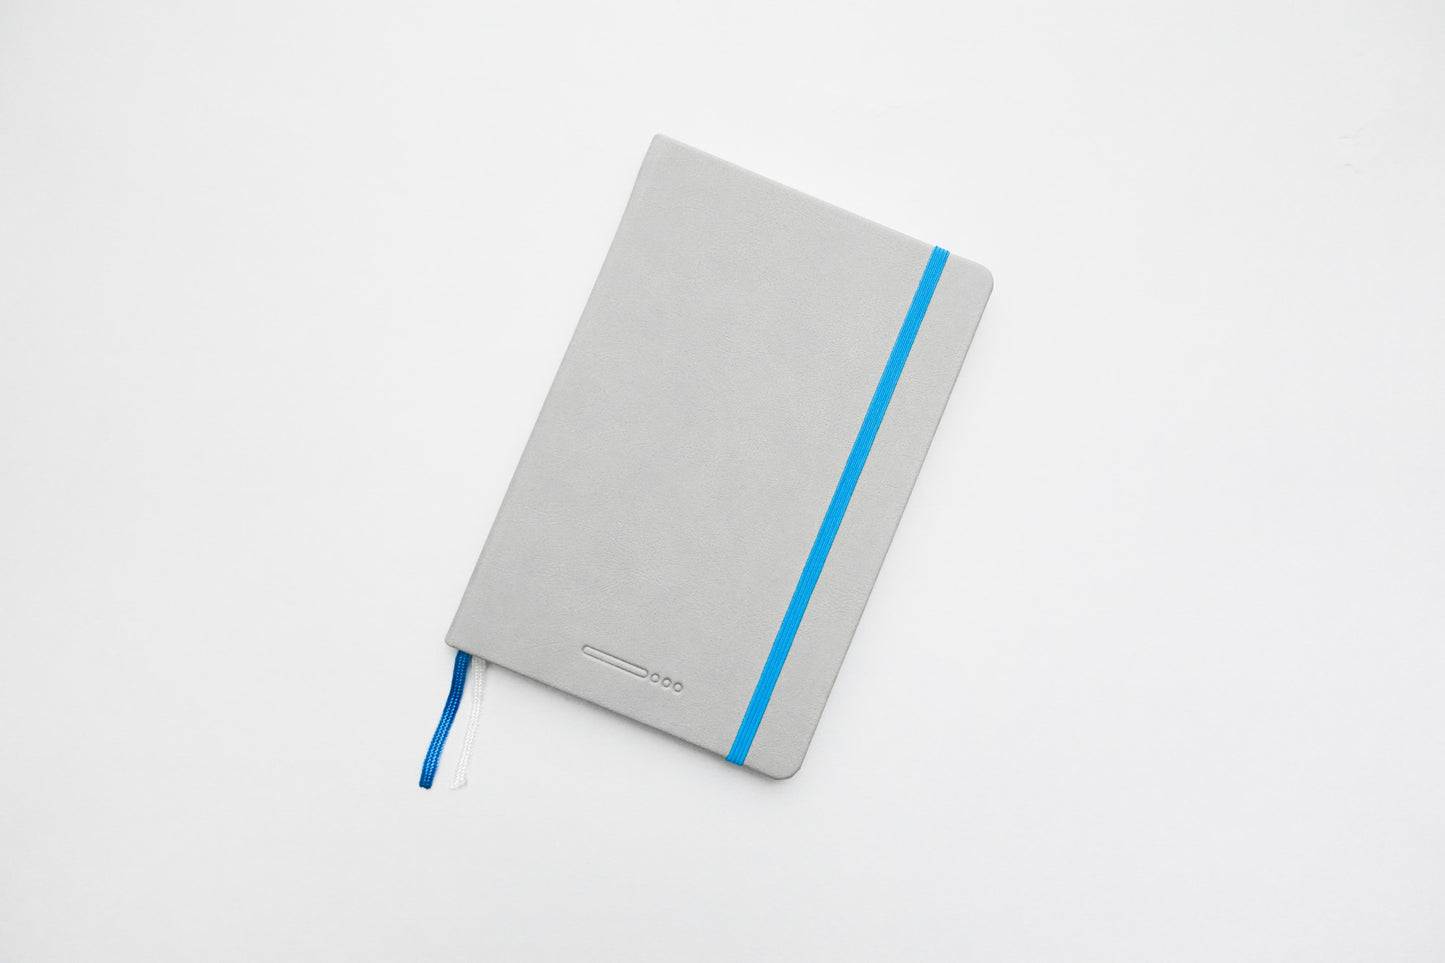 Endless Recorder A5 Notebook - Mountain Snow - Regalia Paper